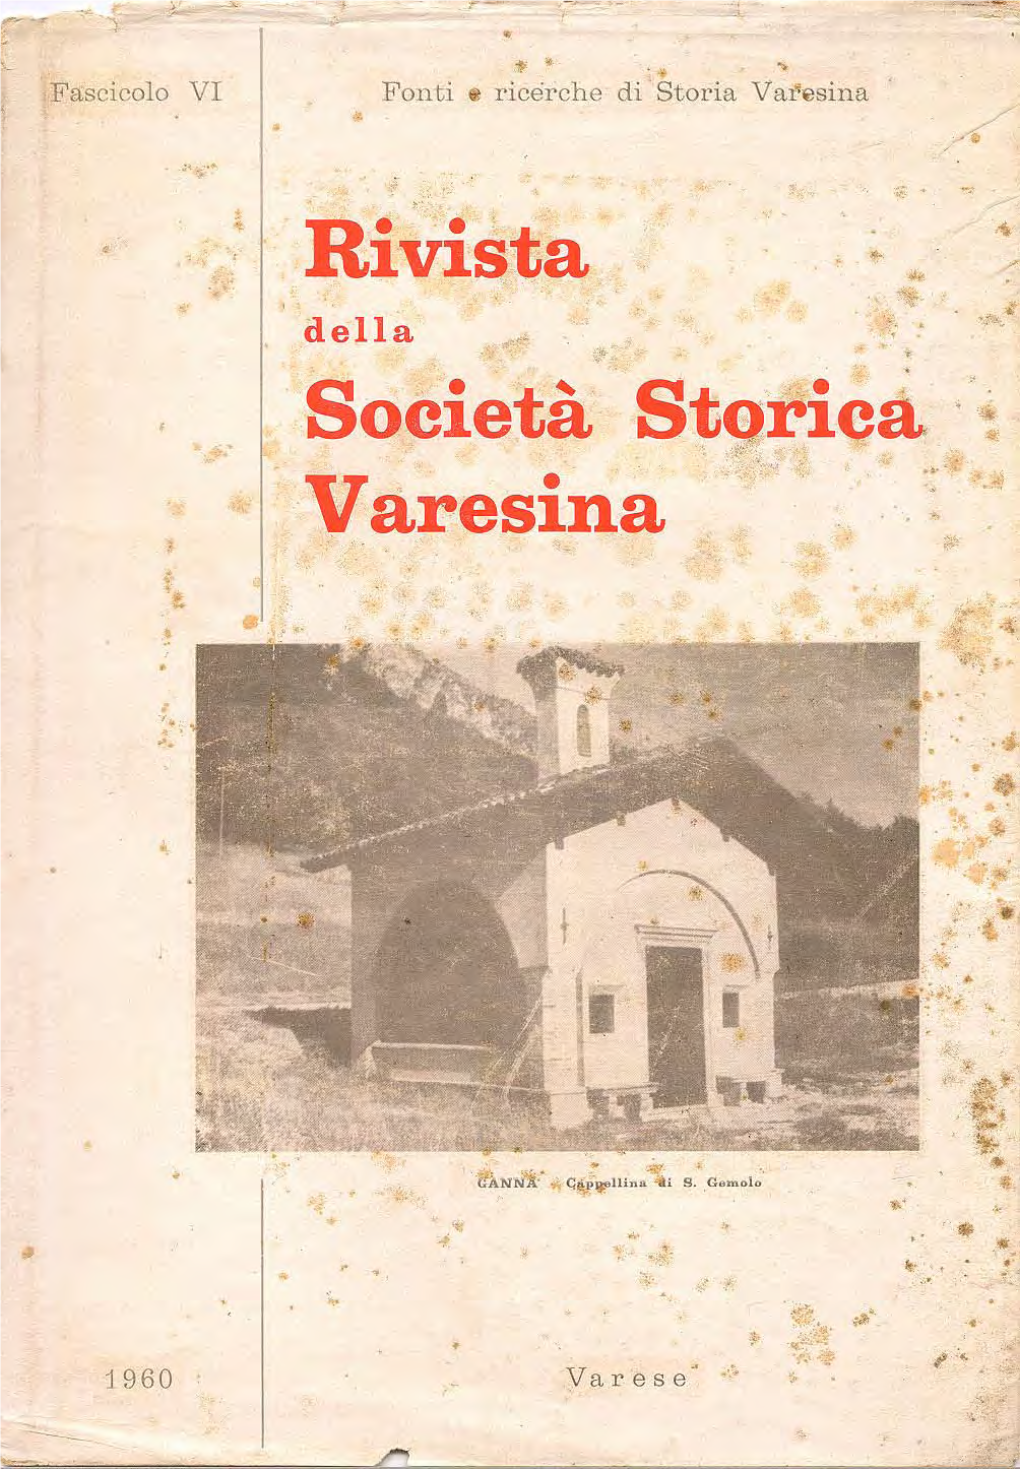 Rivista Della Società Storica Varesina, Fascicolo VI, 1960